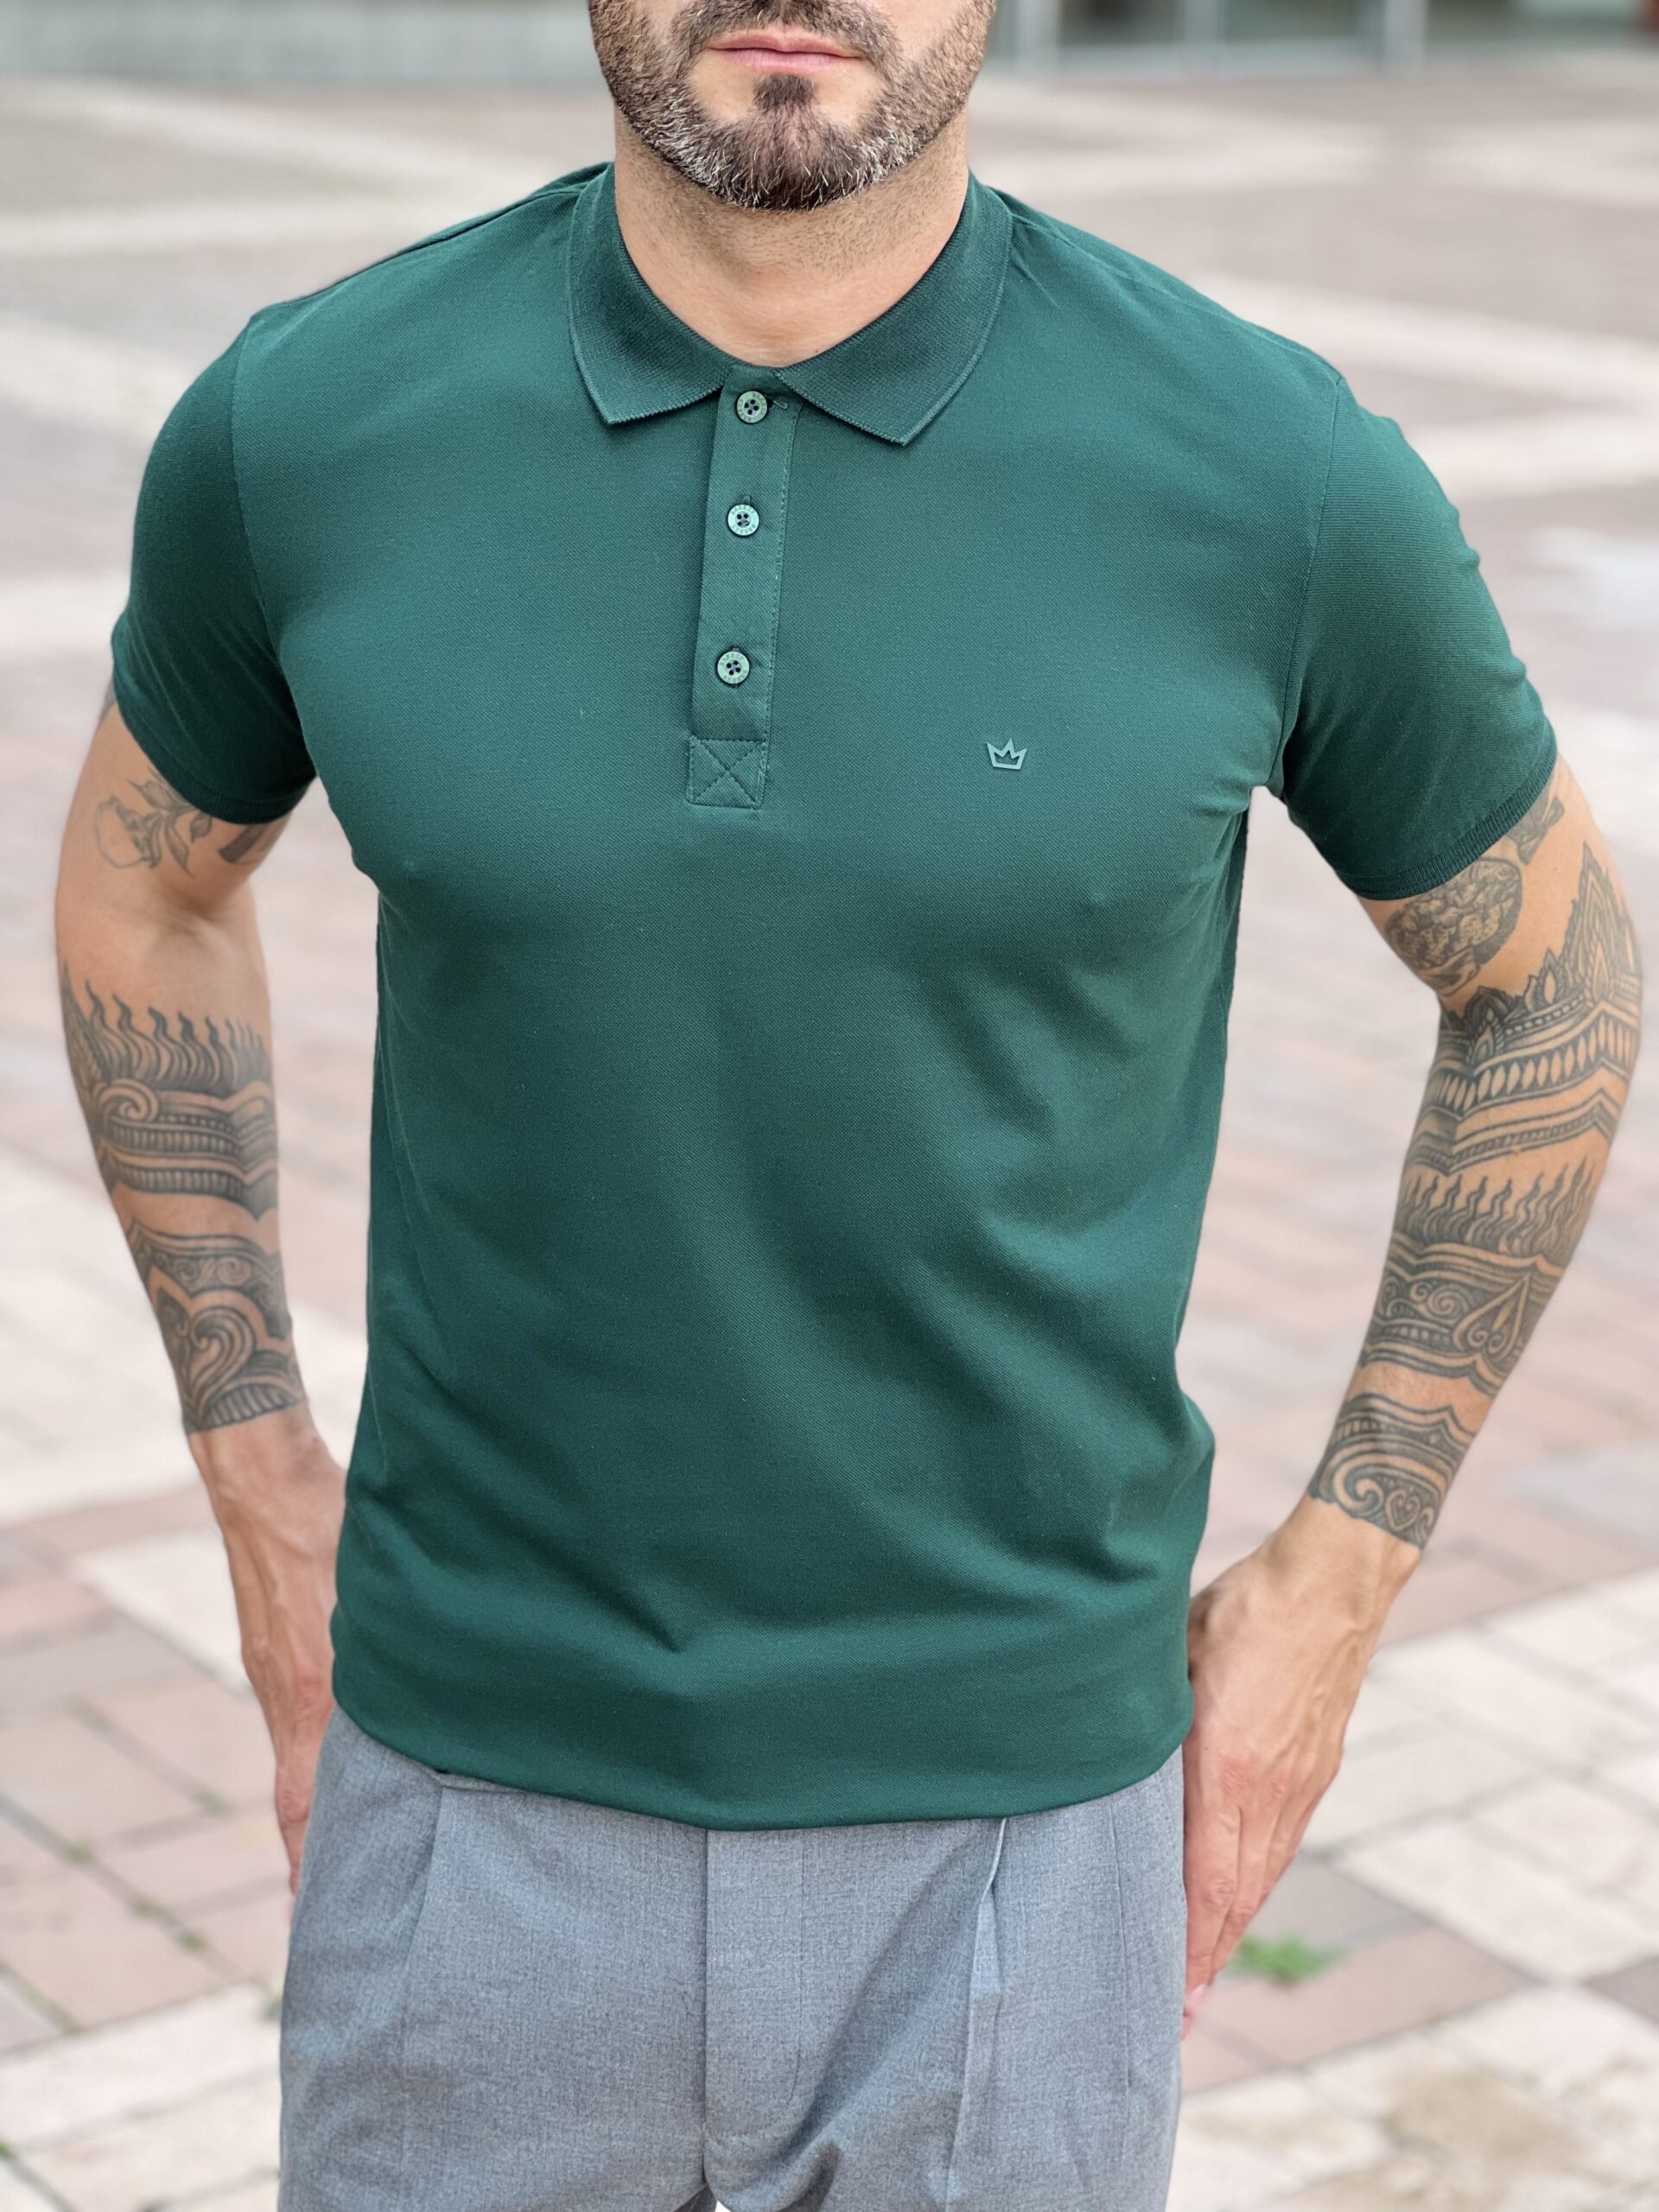 Мужская футболка-поло зеленого цвета. Арт.: 3880 – купить в магазине мужской одежды Smartcasuals